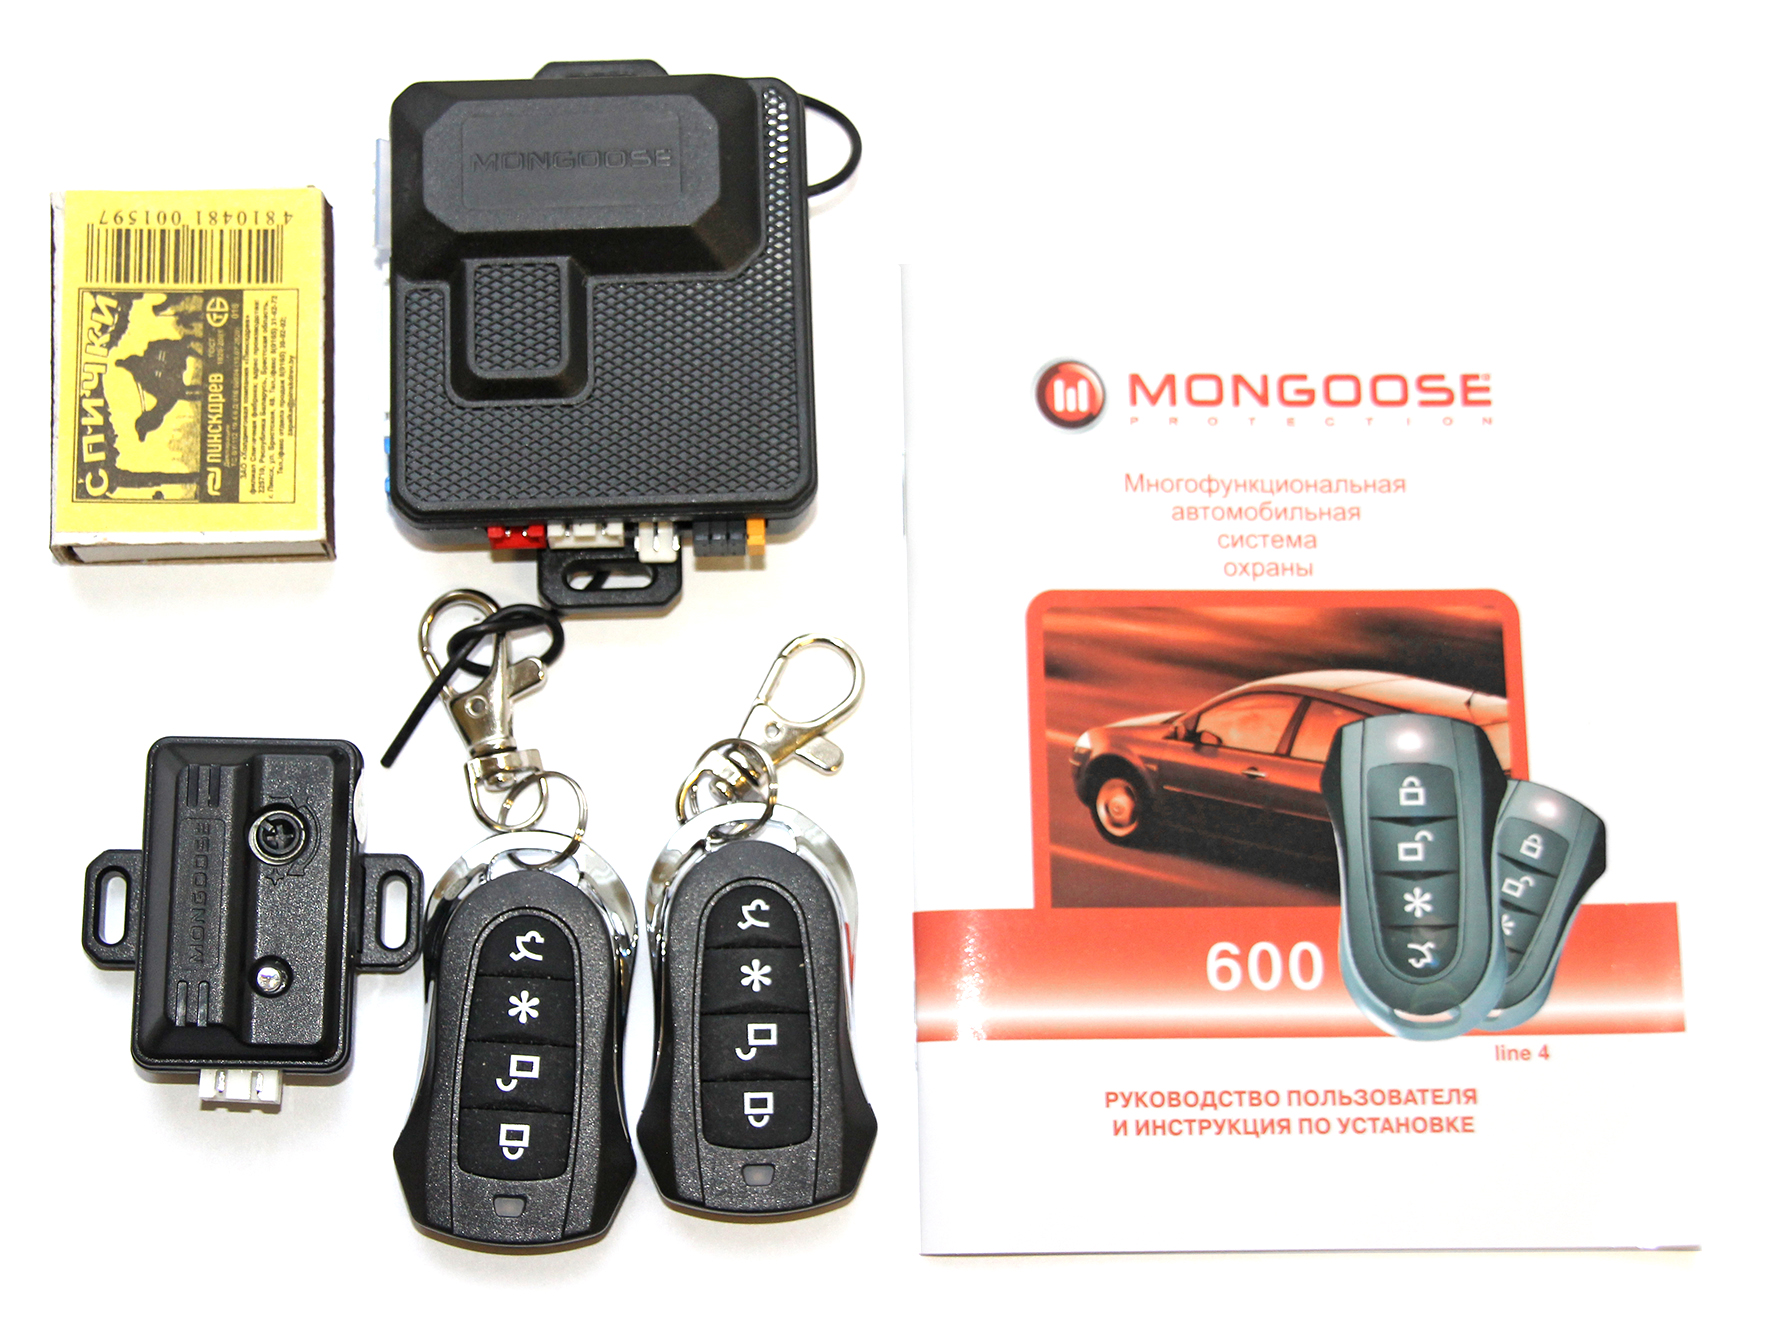 Mongoose 600 line 4 » Автомобильные сигнализации